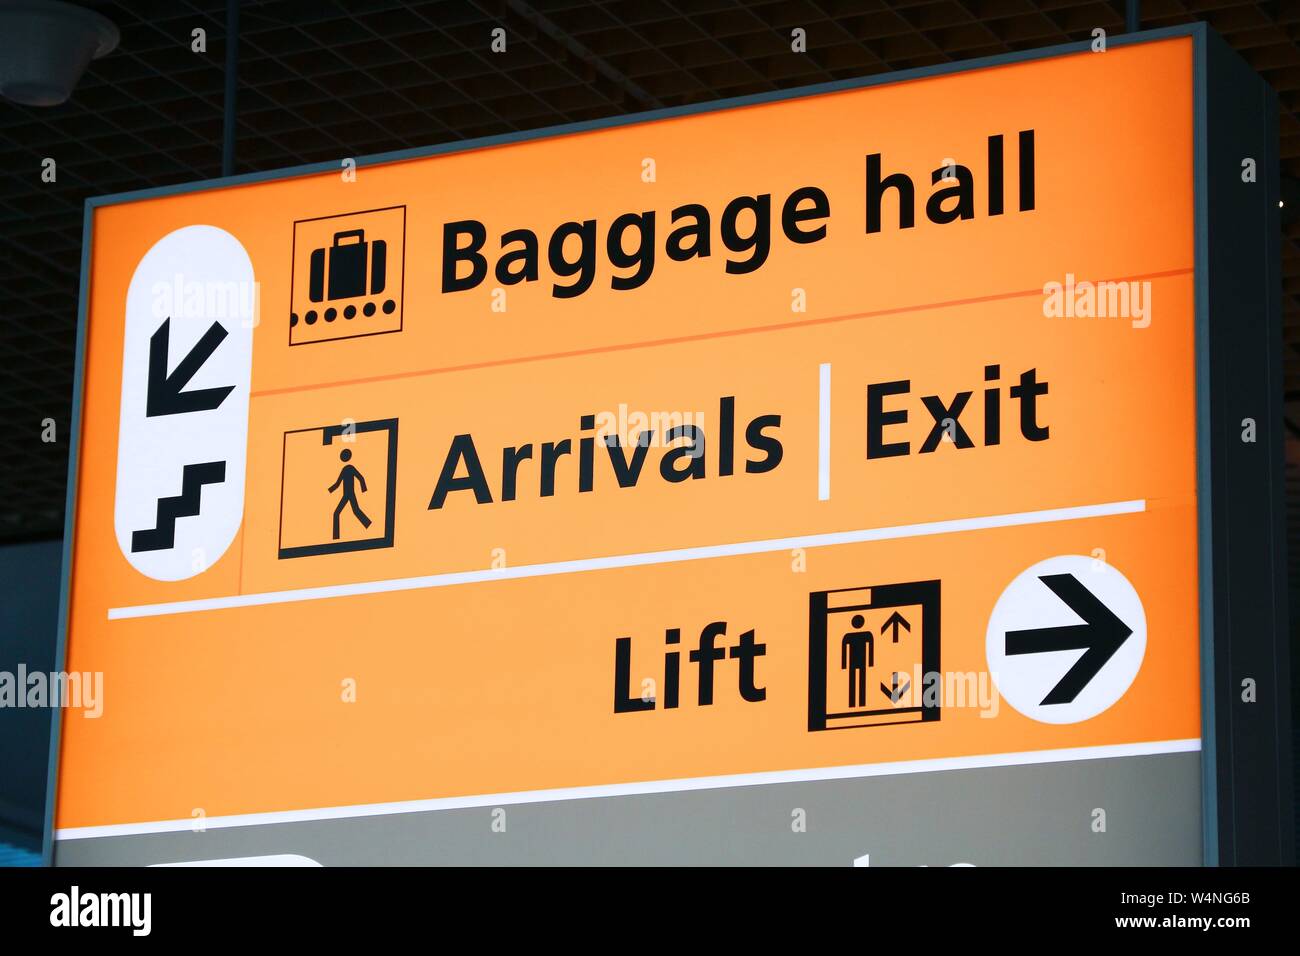 La signalisation de l'aéroport générique à Amsterdam. Un témoin lumineux. Salle des bagages, arrivées et quitter. Banque D'Images